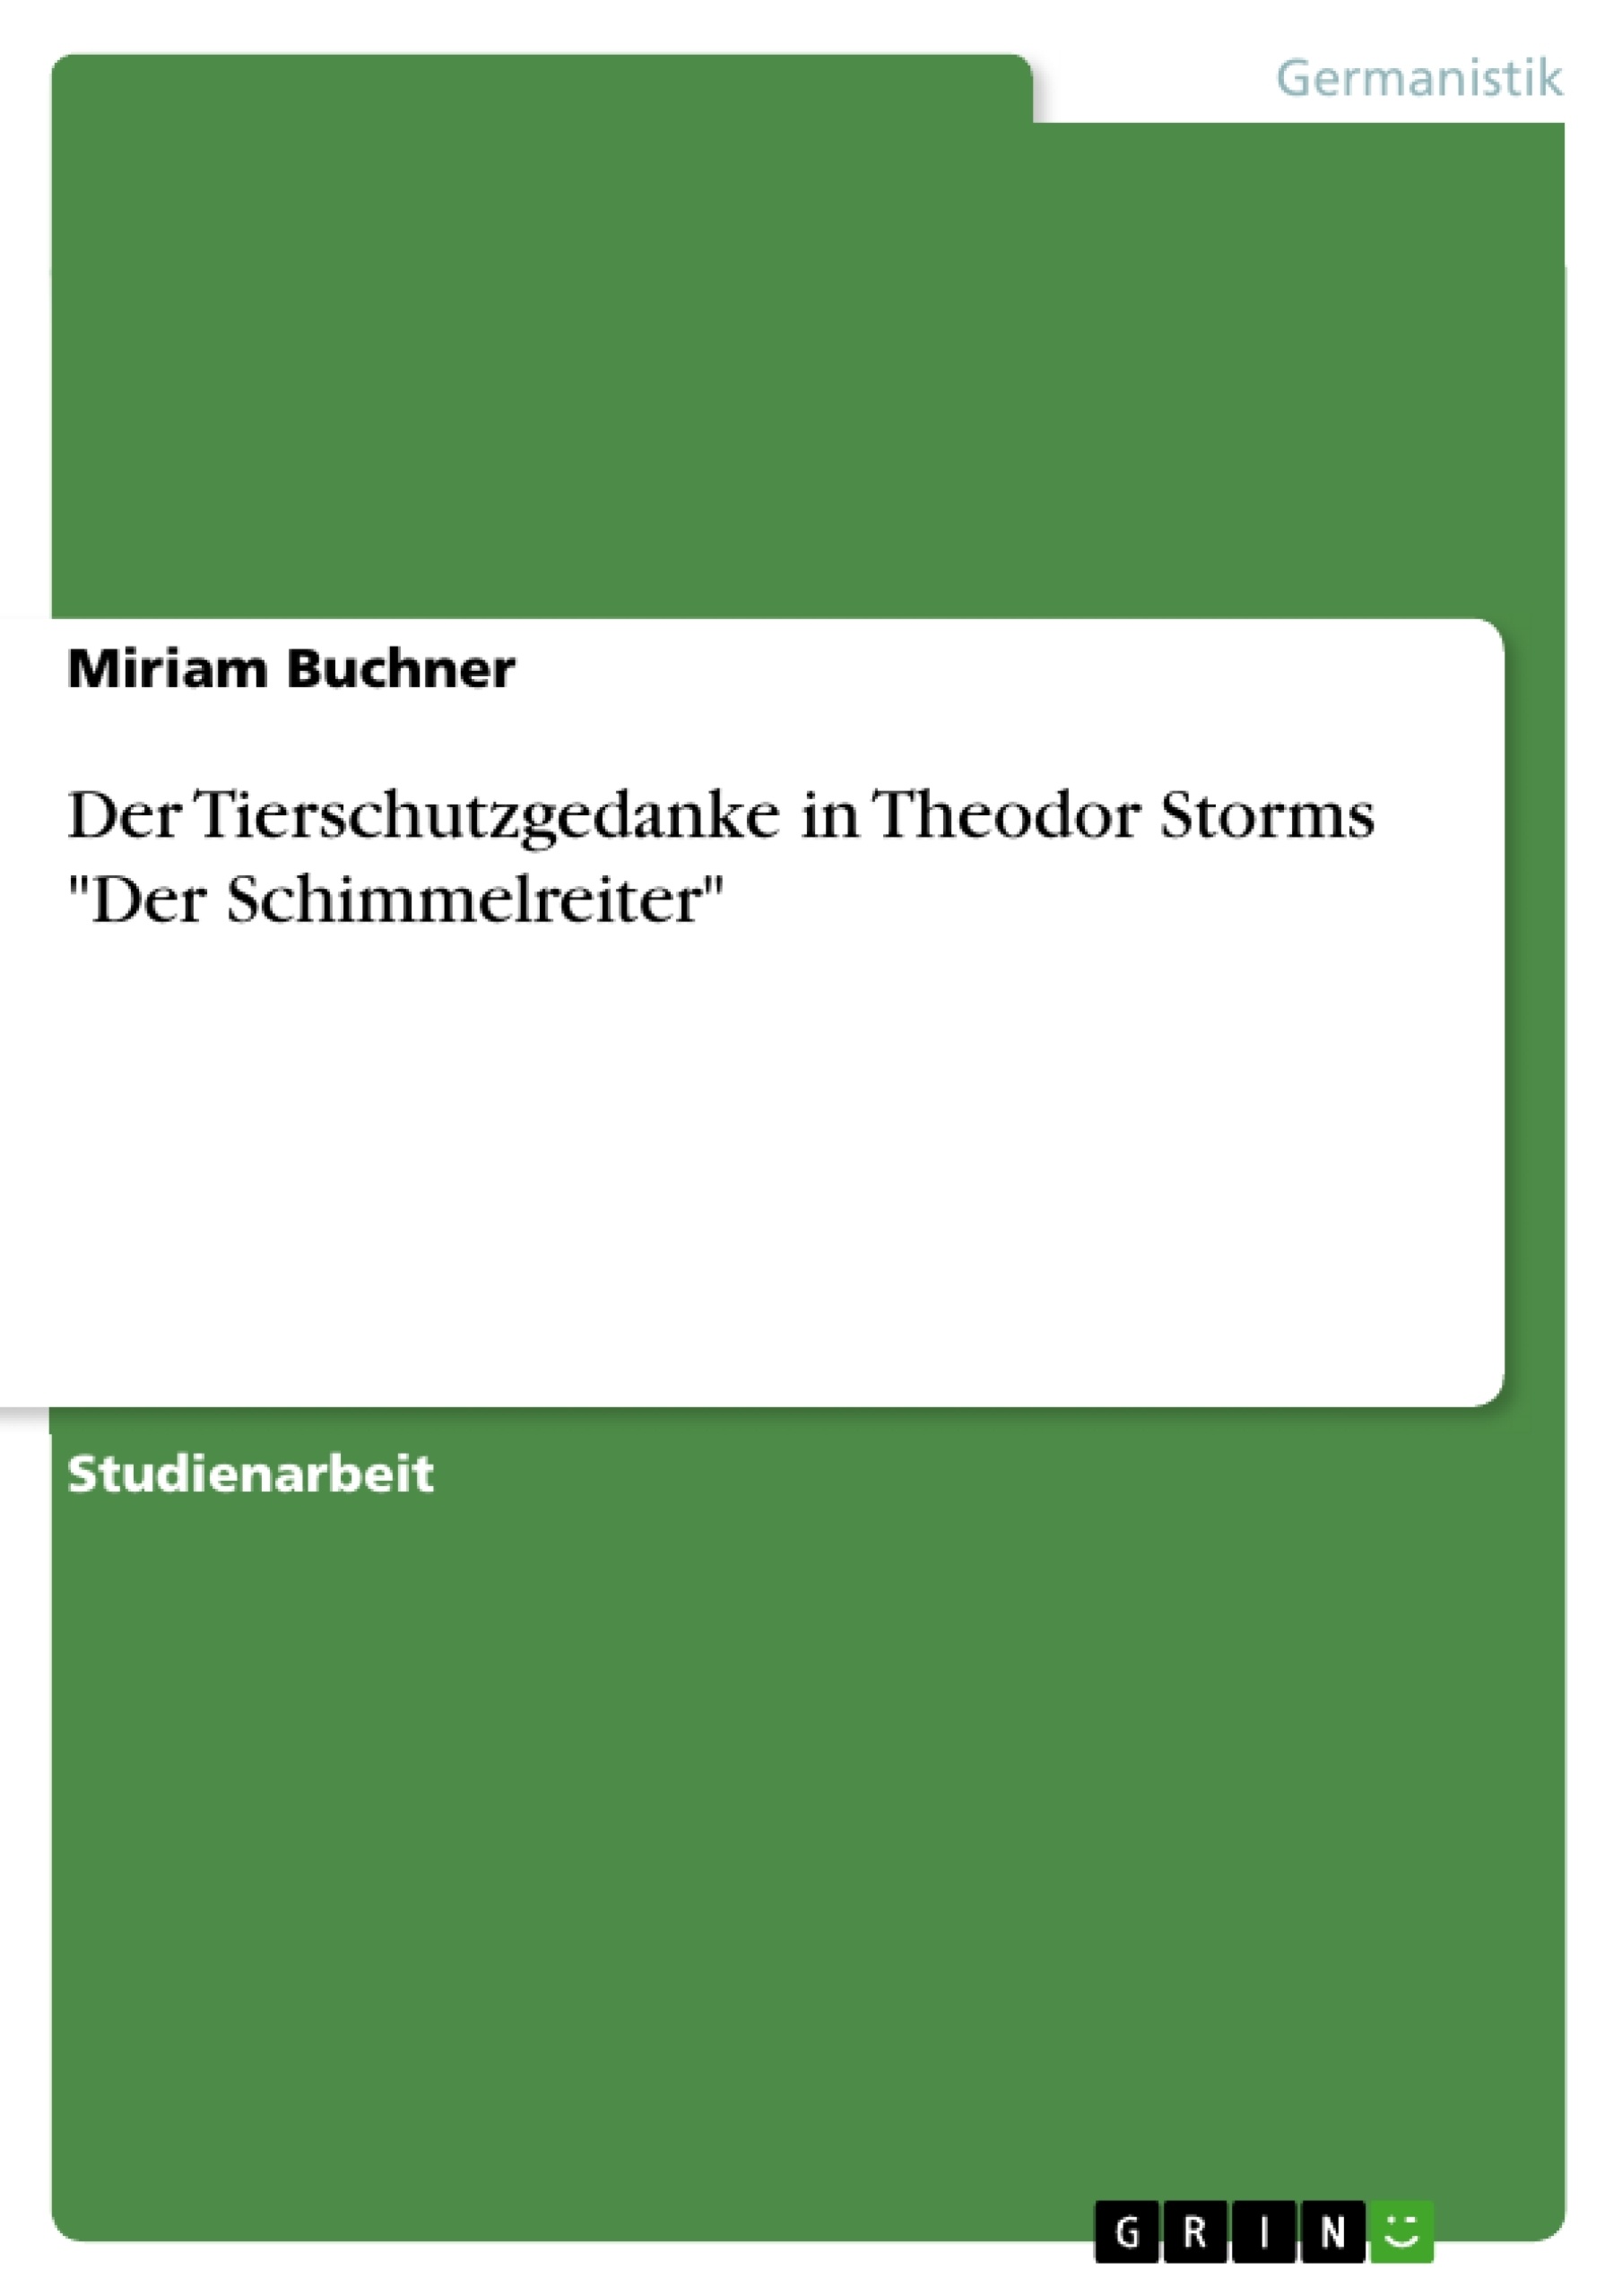 Título: Der Tierschutzgedanke in Theodor Storms "Der Schimmelreiter"